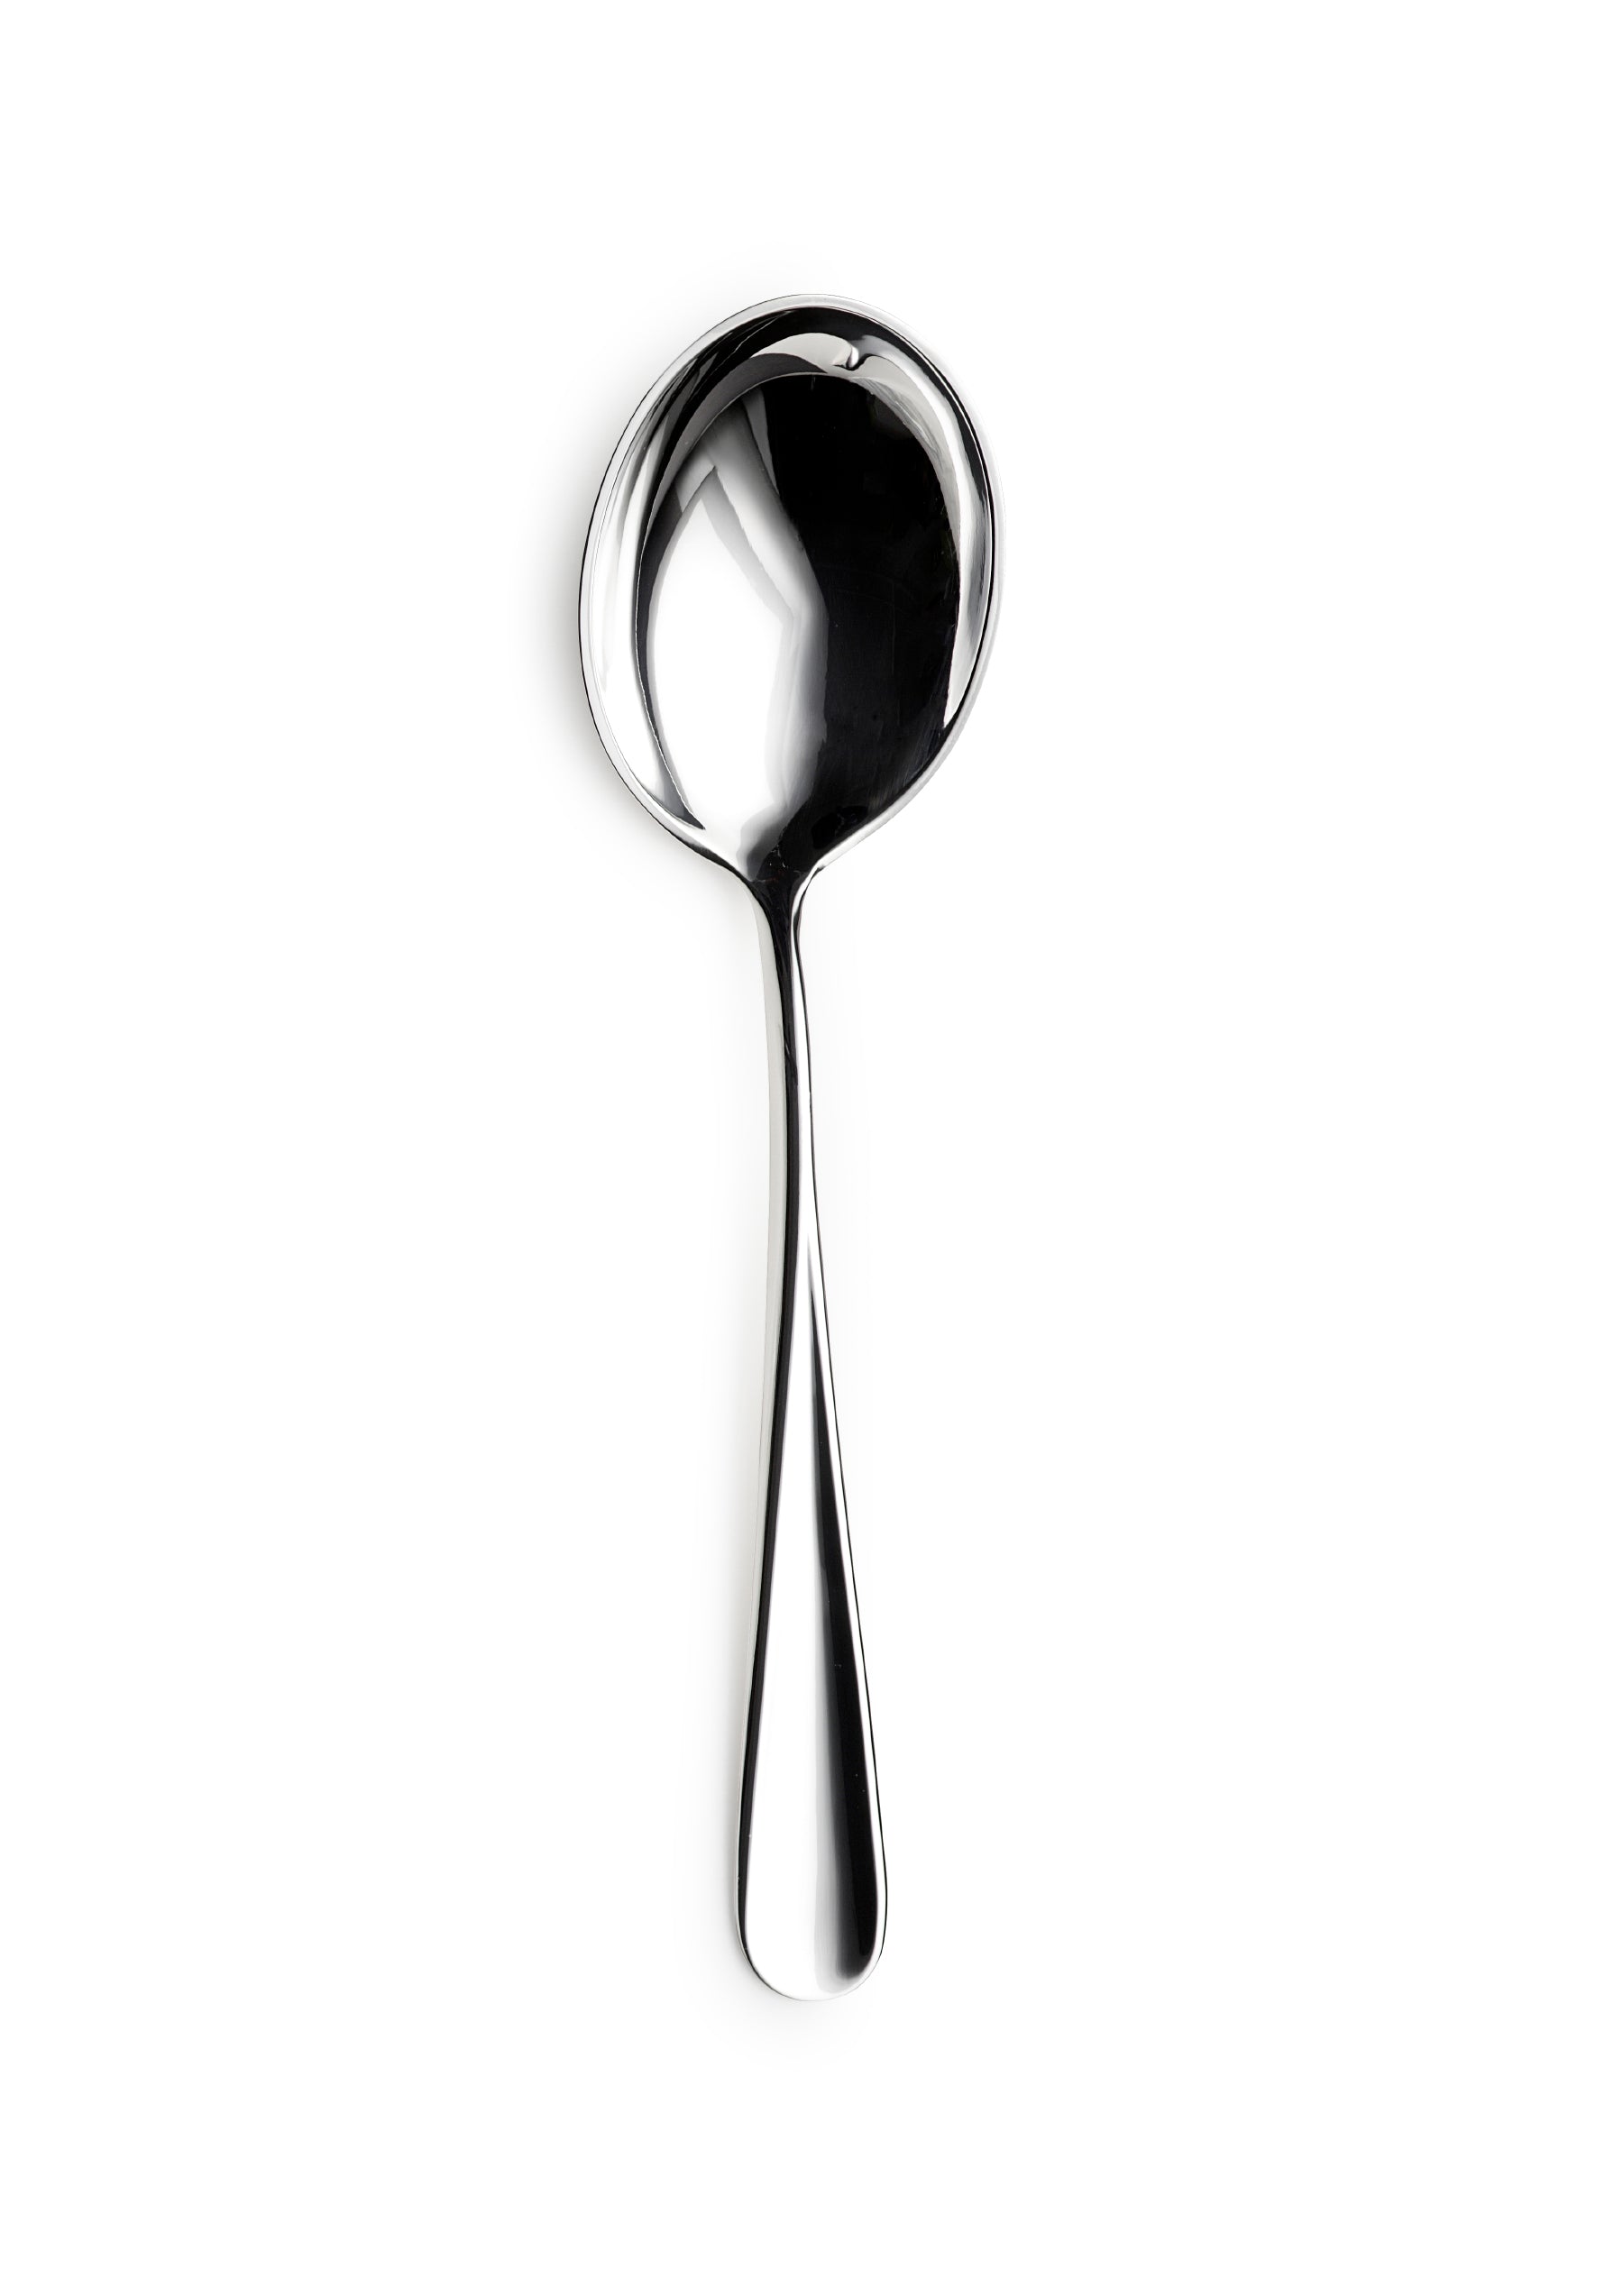 Moon potato spoon